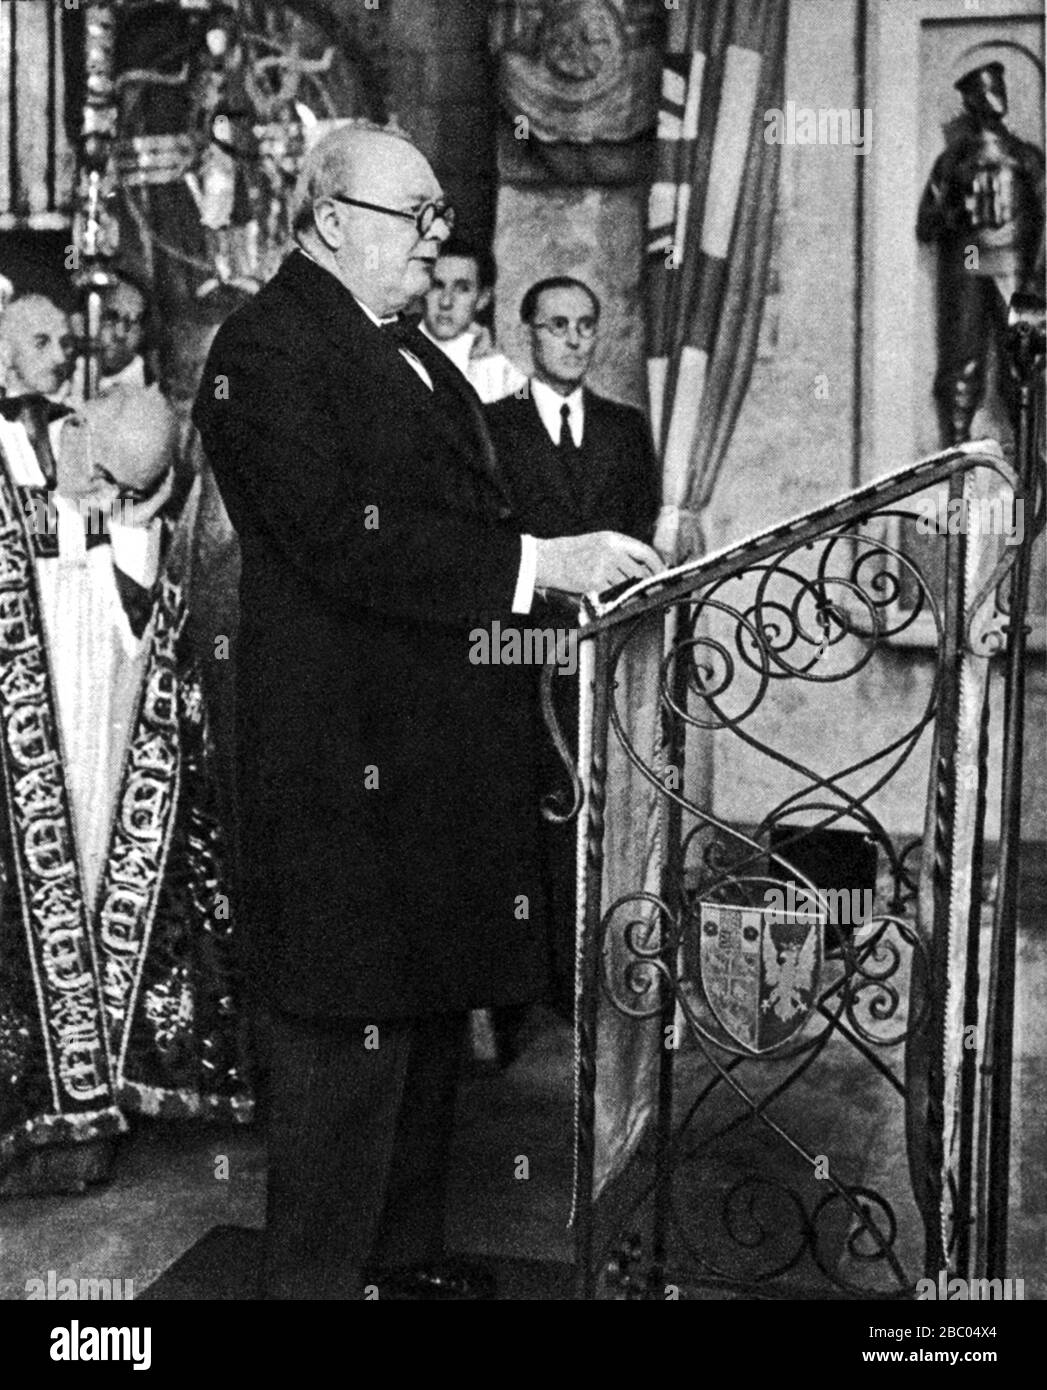 Churchill dévoile un mémorial à l'abbaye de Westminster pour les sous-marins, les Commandos et les forces aéroportées qui ont perdu la vie pendant la seconde Guerre mondiale.mai 1948 Banque D'Images